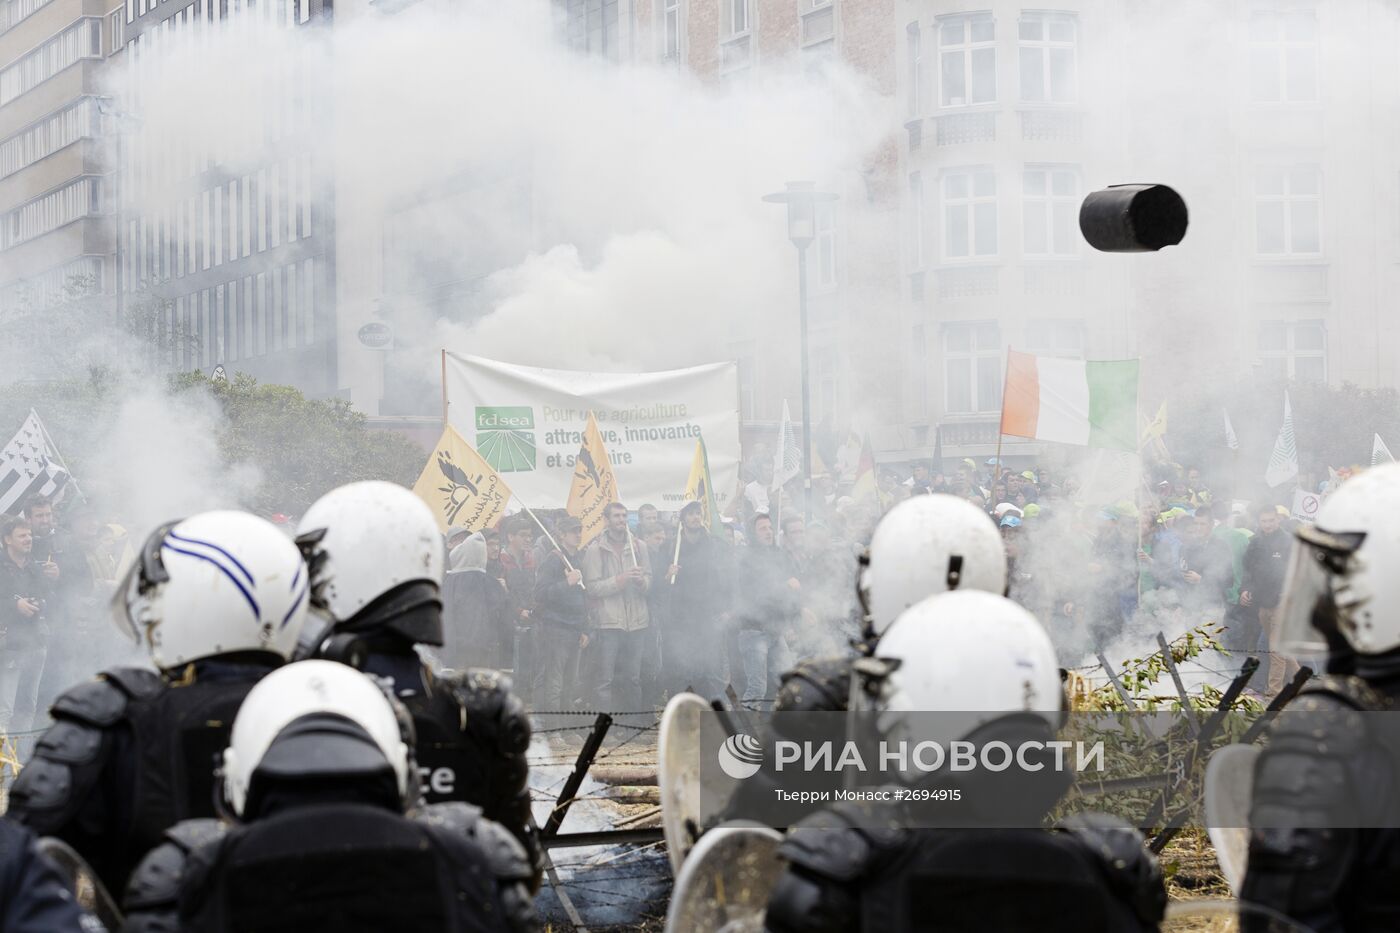 Акция протеста фермеров в Брюсселе